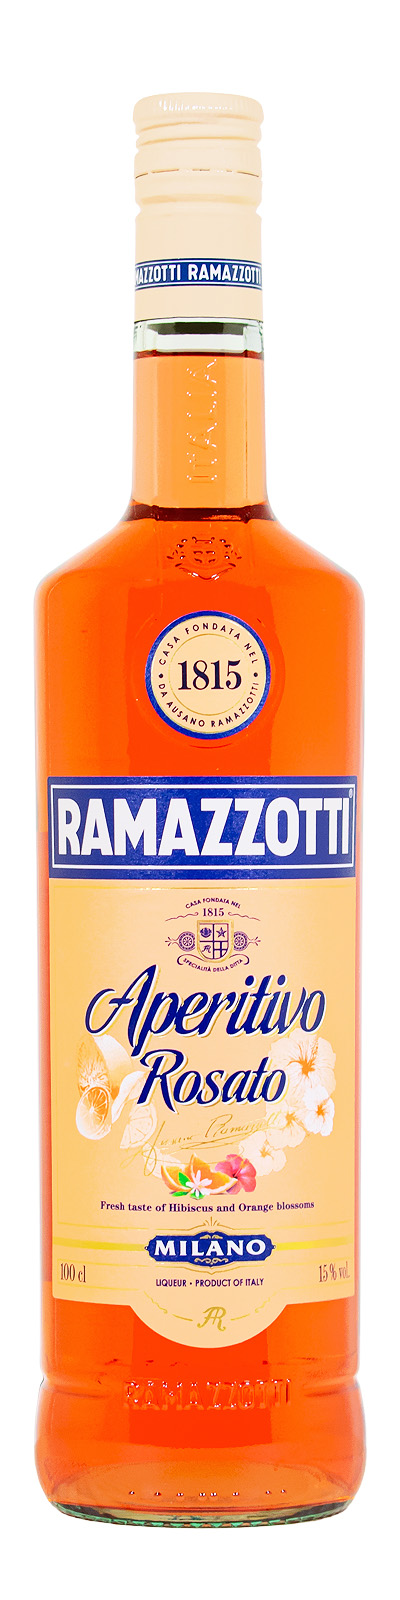 Ramazzotti Aperitivo Rosato (1L) günstig kaufen